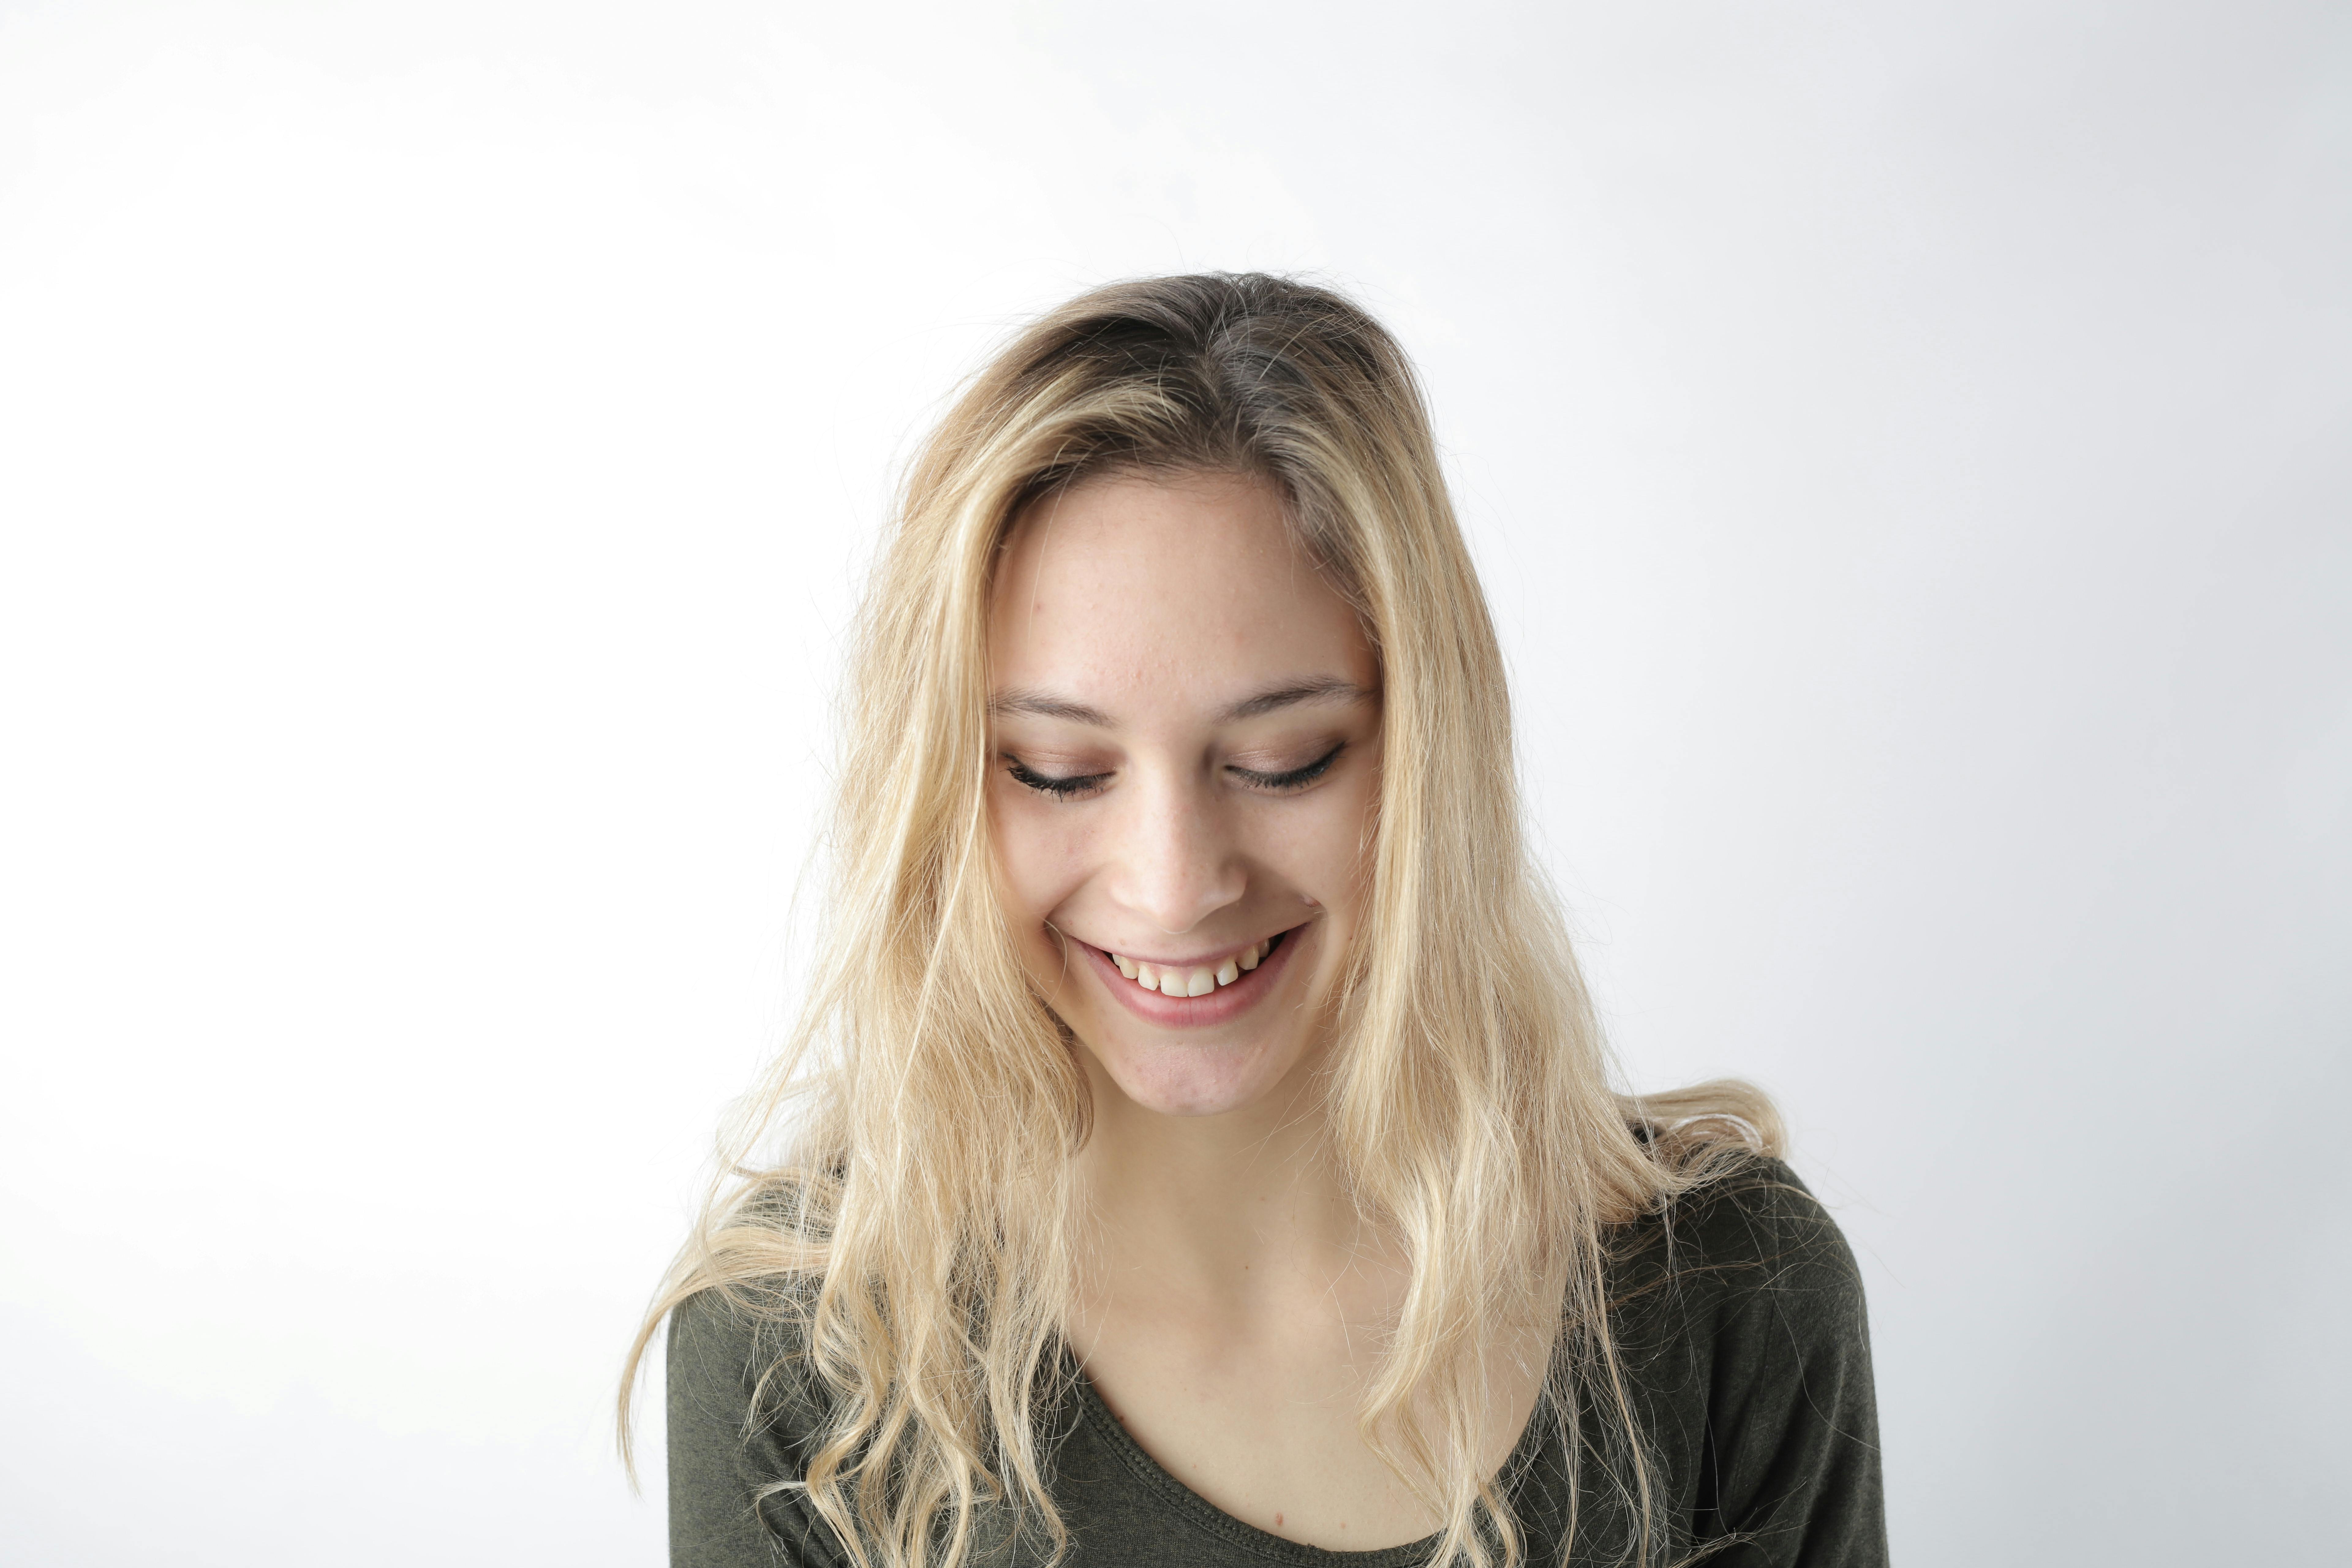 Portrait Photo of Woman Smiling | Source: Pexels